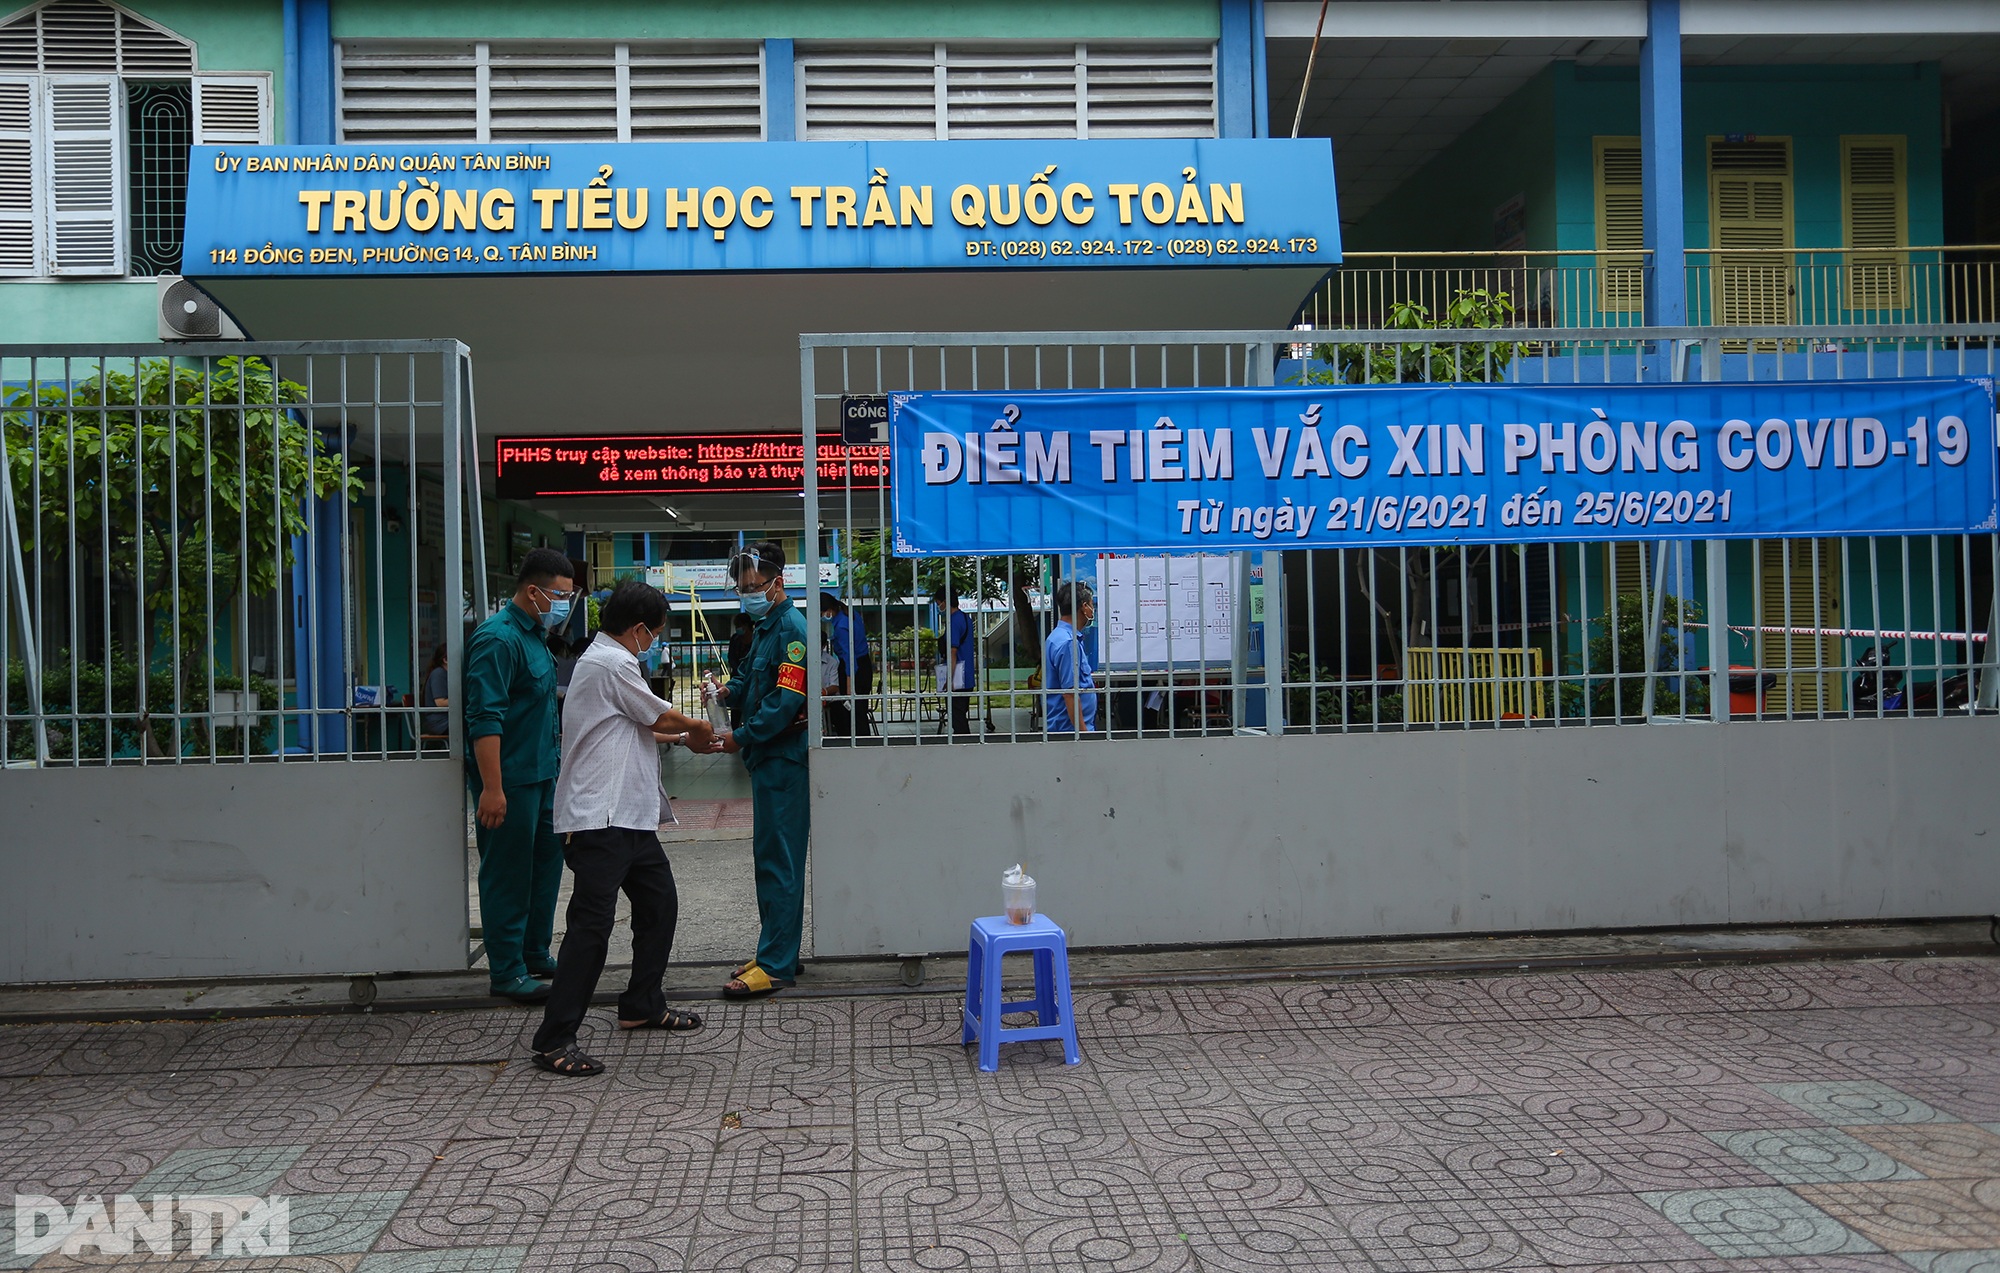 TPHCM dùng trường học, nhà thi đấu để tiêm vắc xin Covid-19 cho 1 triệu dân - 8